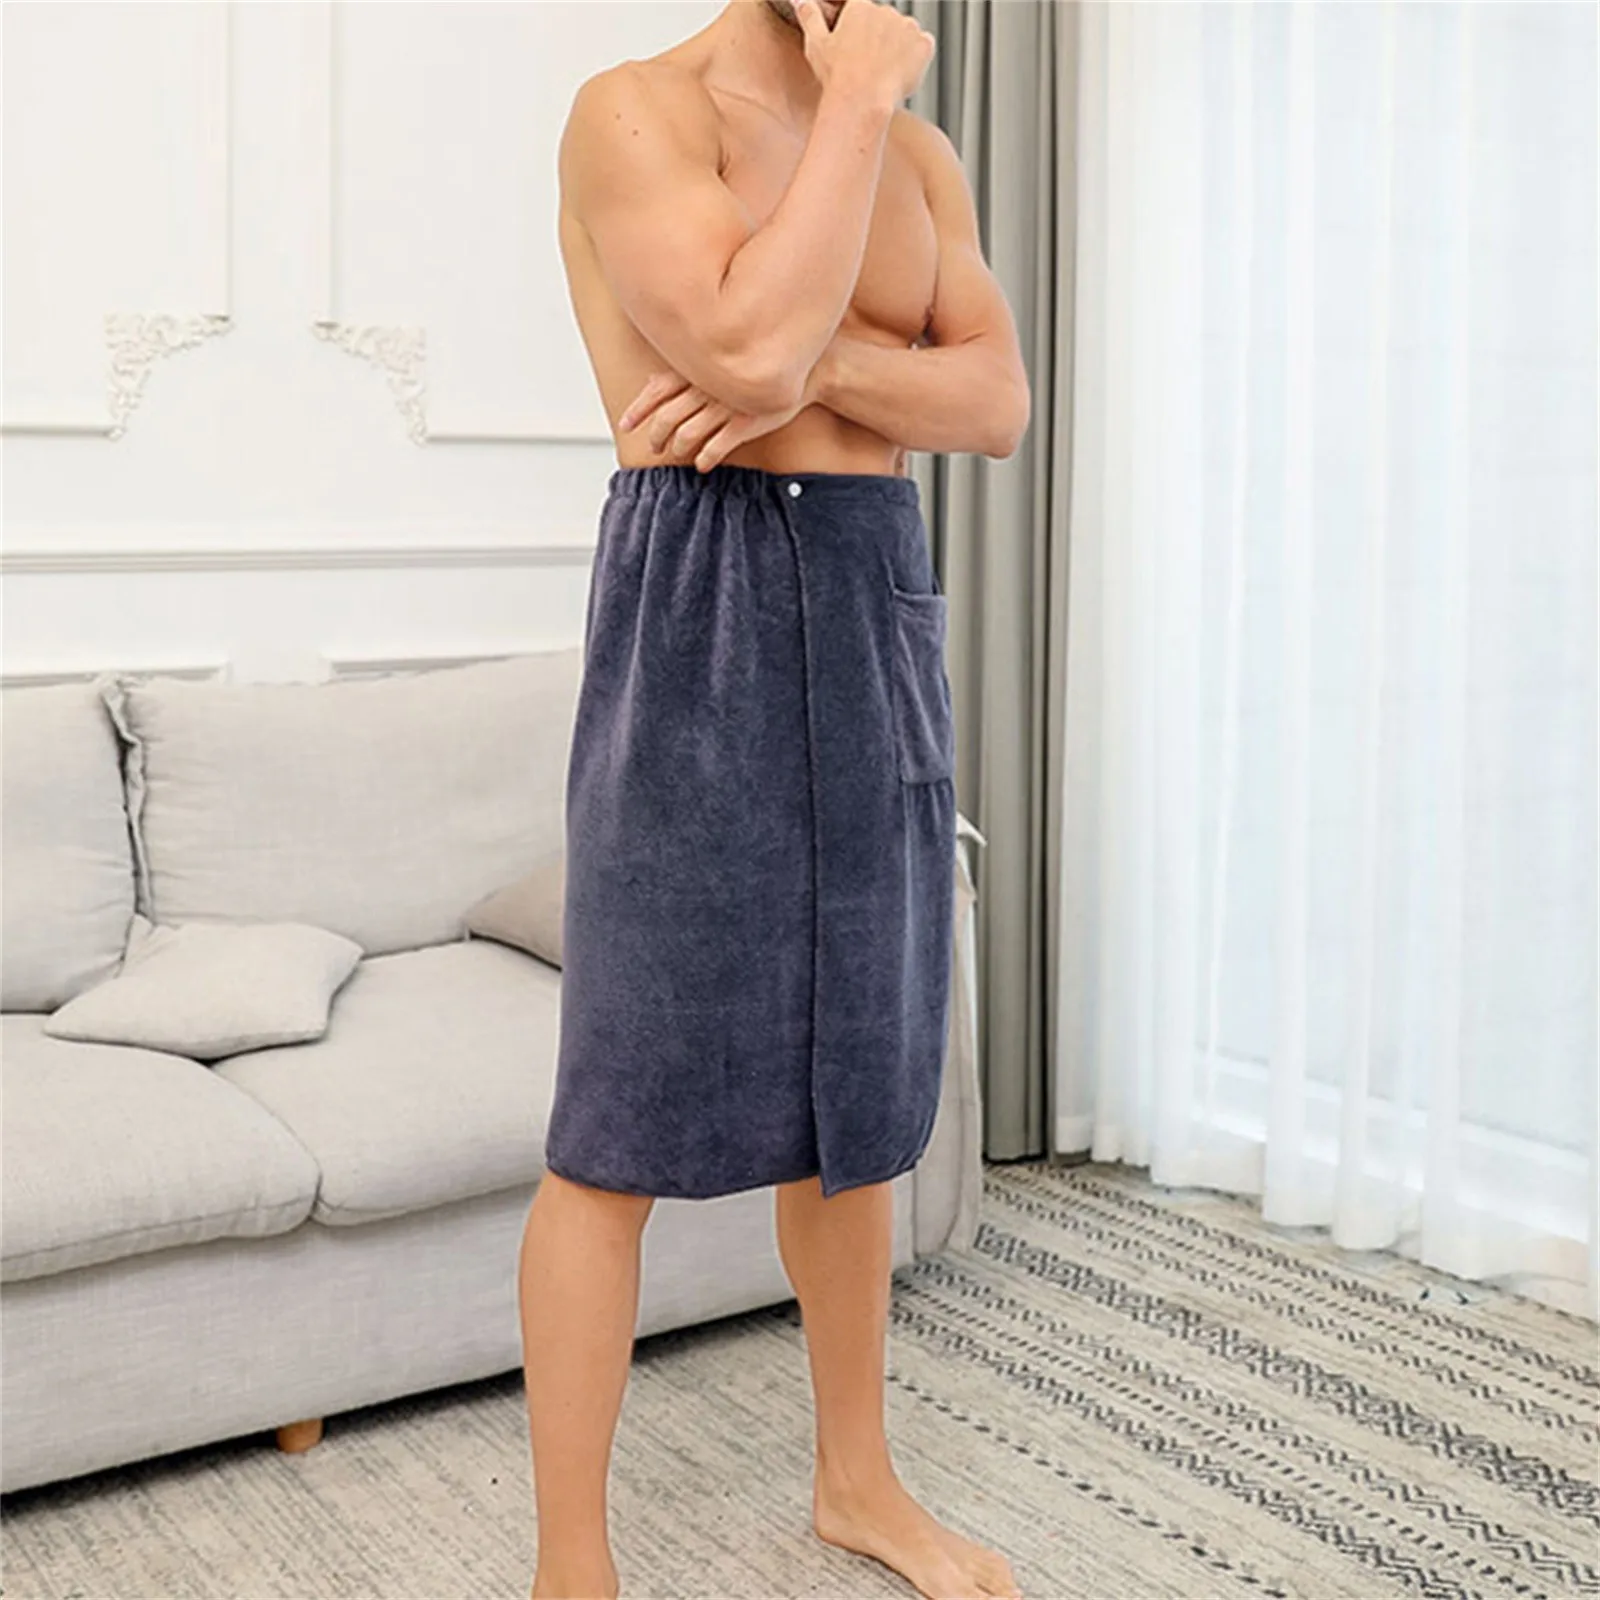 Erkek Giyilebilir banyo havlusu dalgıç giysisi Erkekler için Erkek dalış elbisesi Erkek dalış elbisesi s 5mm dalış elbisesi Erkekler için Soğuk Su Ön Zip 5mm Görüntü 4